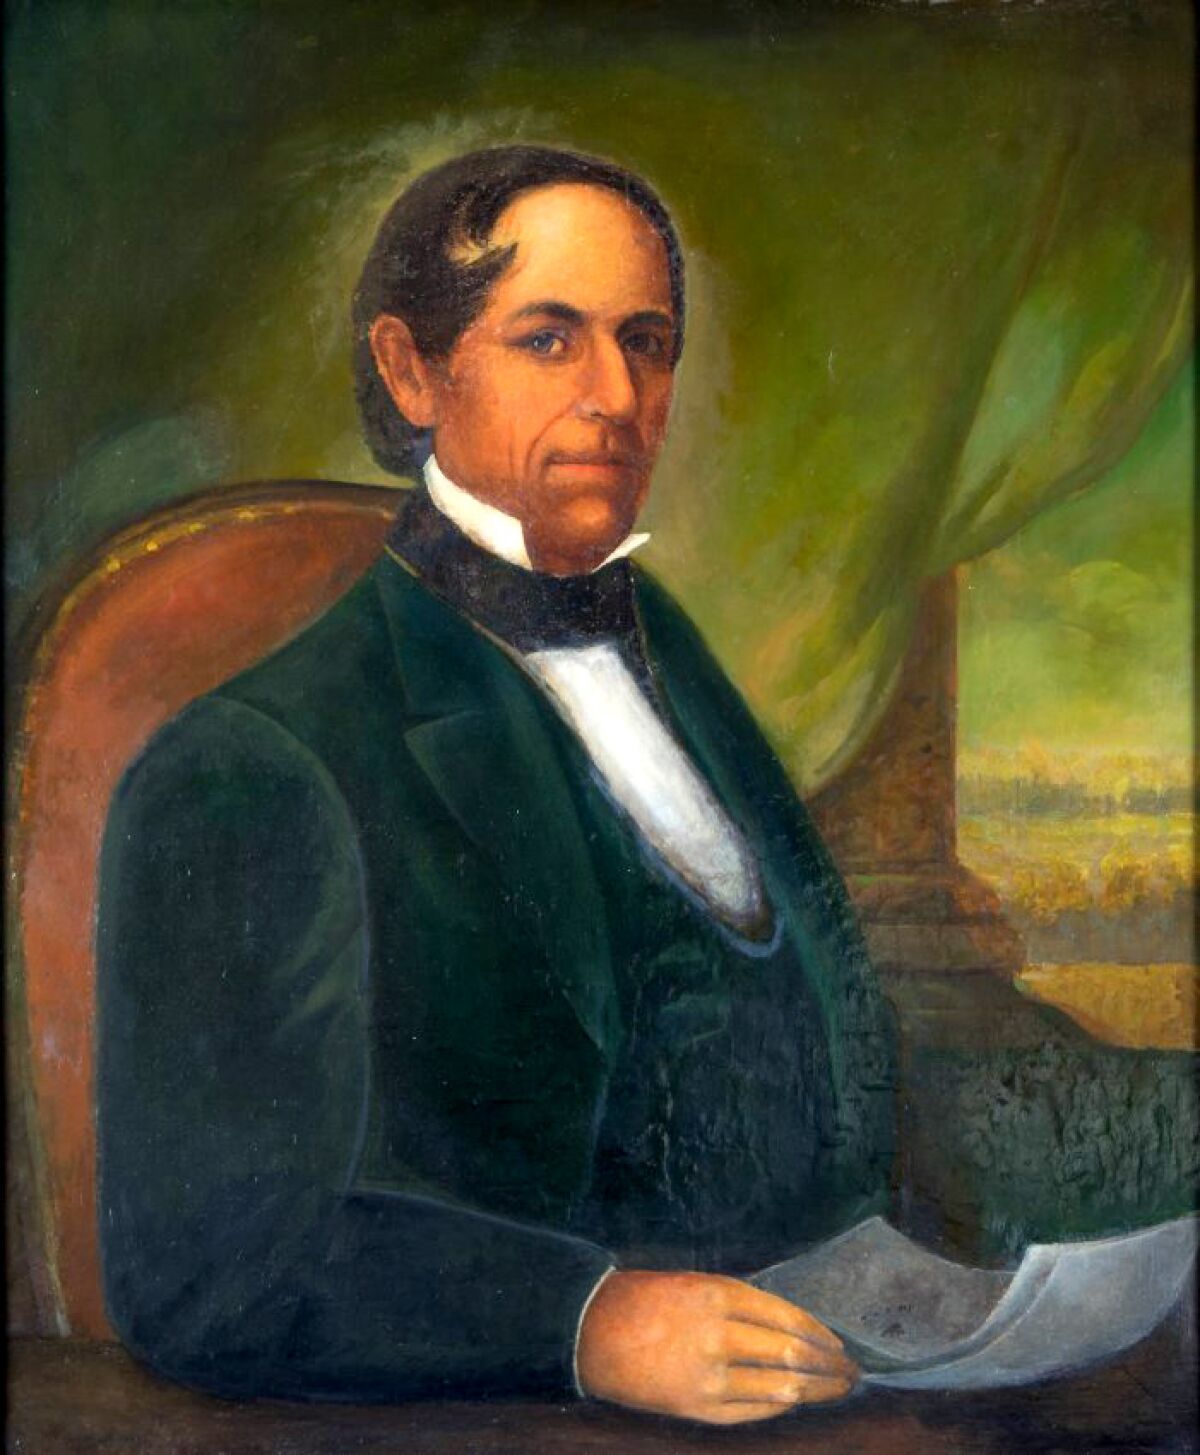 Manuel Domínguez era dueño del Rancho San Pedro, de 75.000 acres, un rancho ganadero que abarcaba la mayor parte de la tierra entre la península de Palos Verdes y Compton.